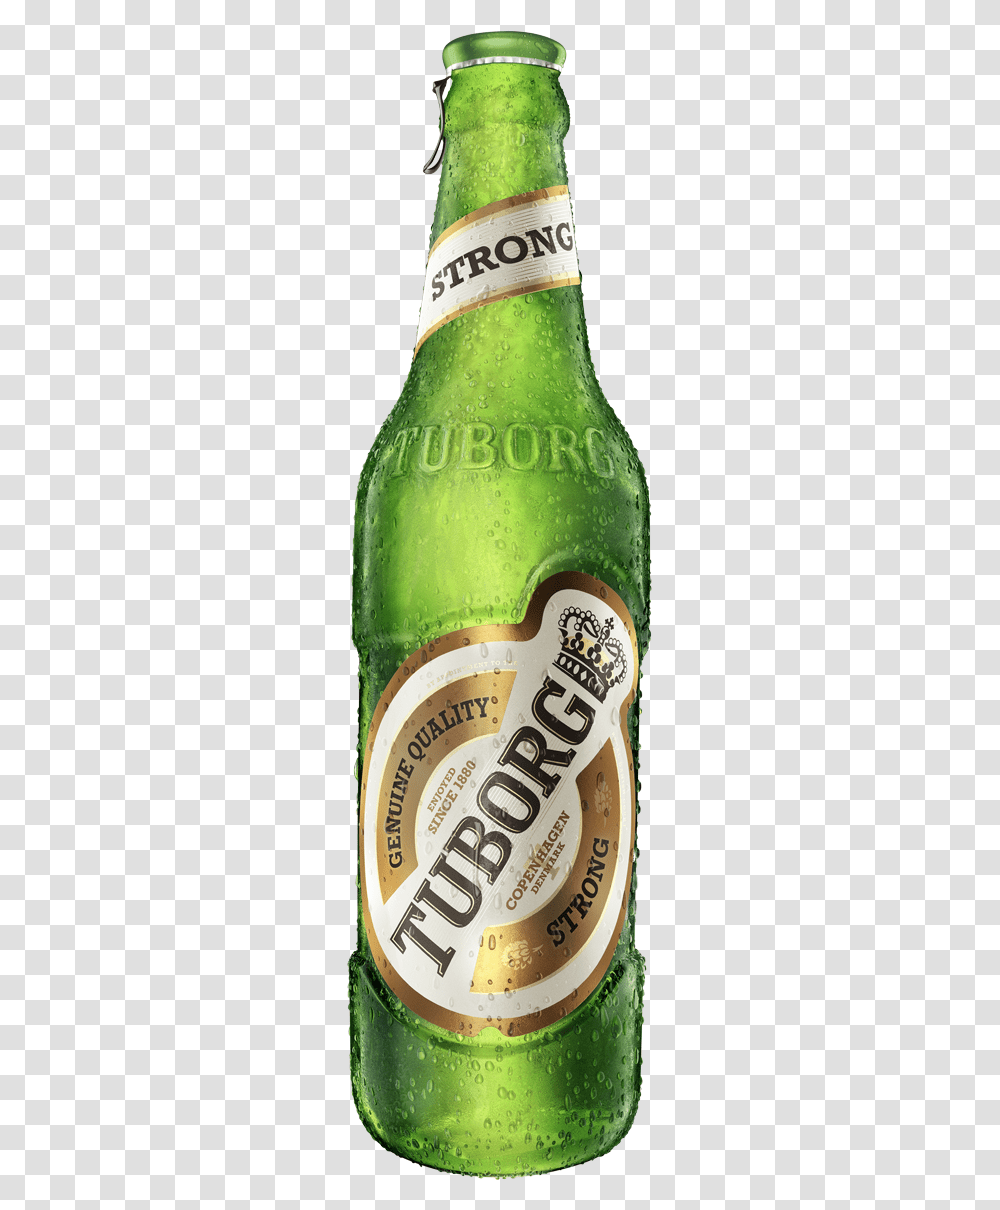 Tuborg Strong Tuborg Strong Premium Beer, Alcohol, Beverage, Drink, Bottle Transparent Png